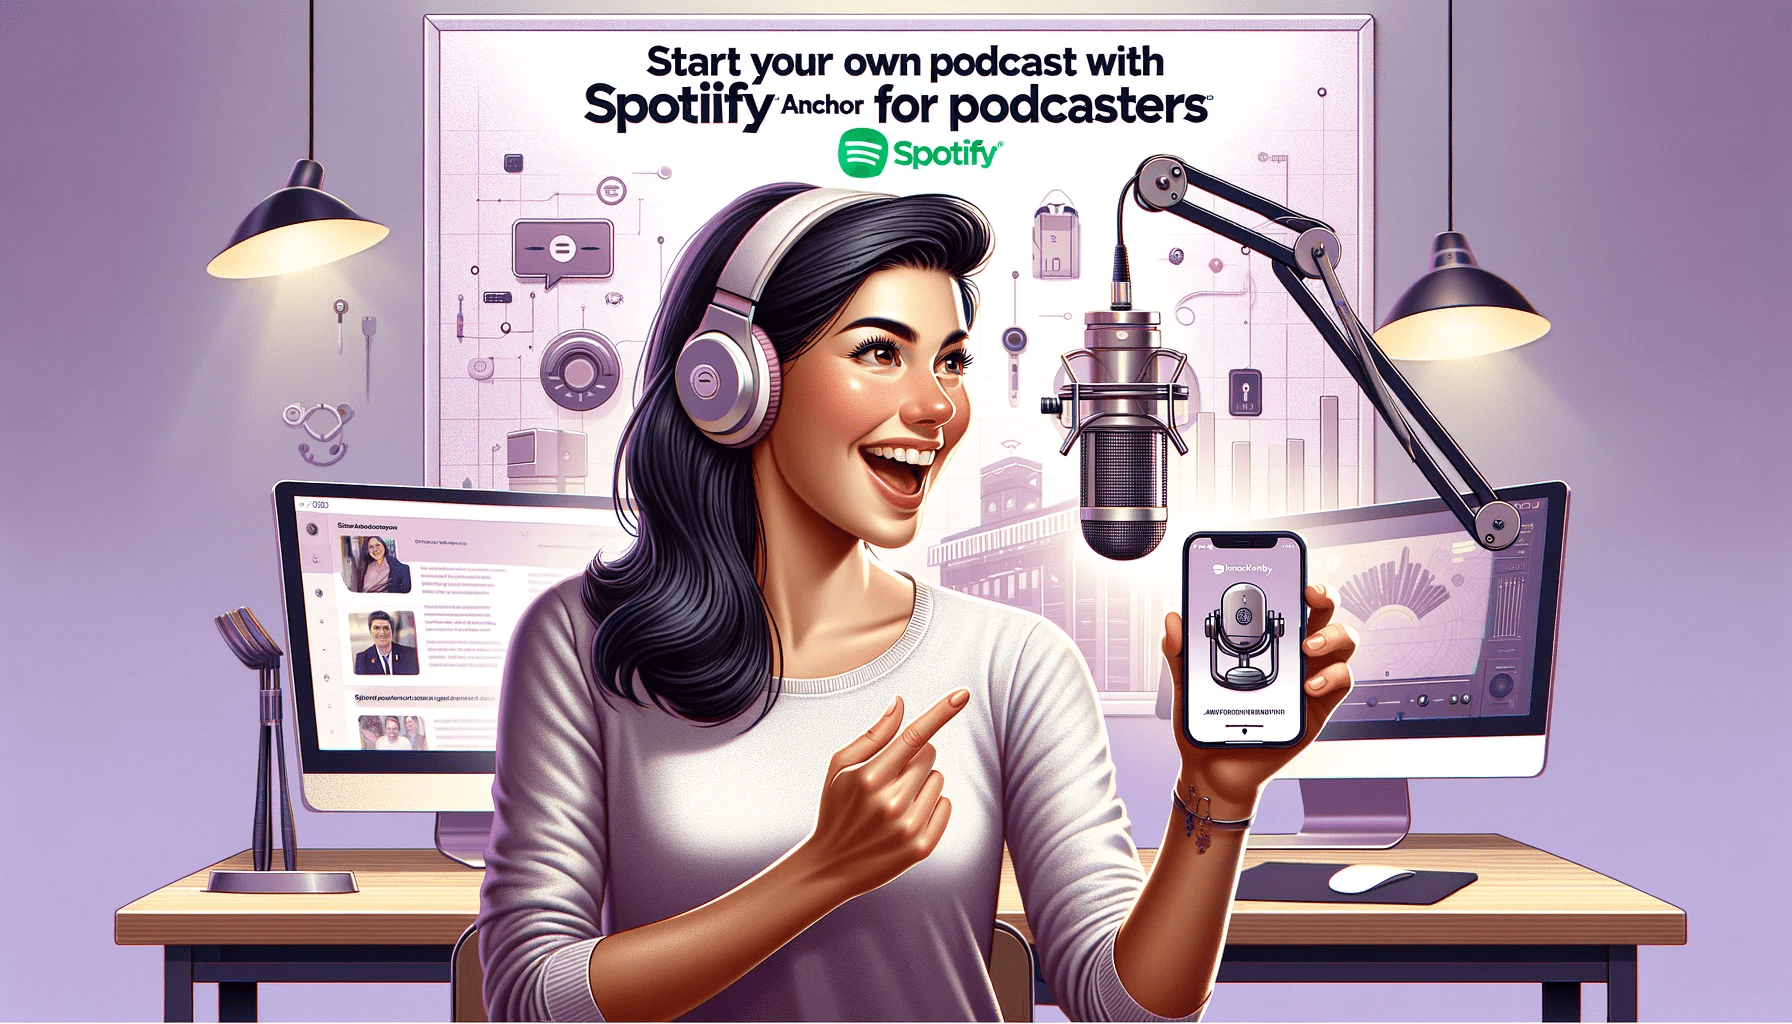 Dein eigener Podcast Starte! JETZT mit Spotify (Anchor) für Podcasters. Wie werde ich im Internet sichtbar?!: Starte mit Social Media für Erfolg durch deinen Online Auftritt und mehr Sichtbarkeit